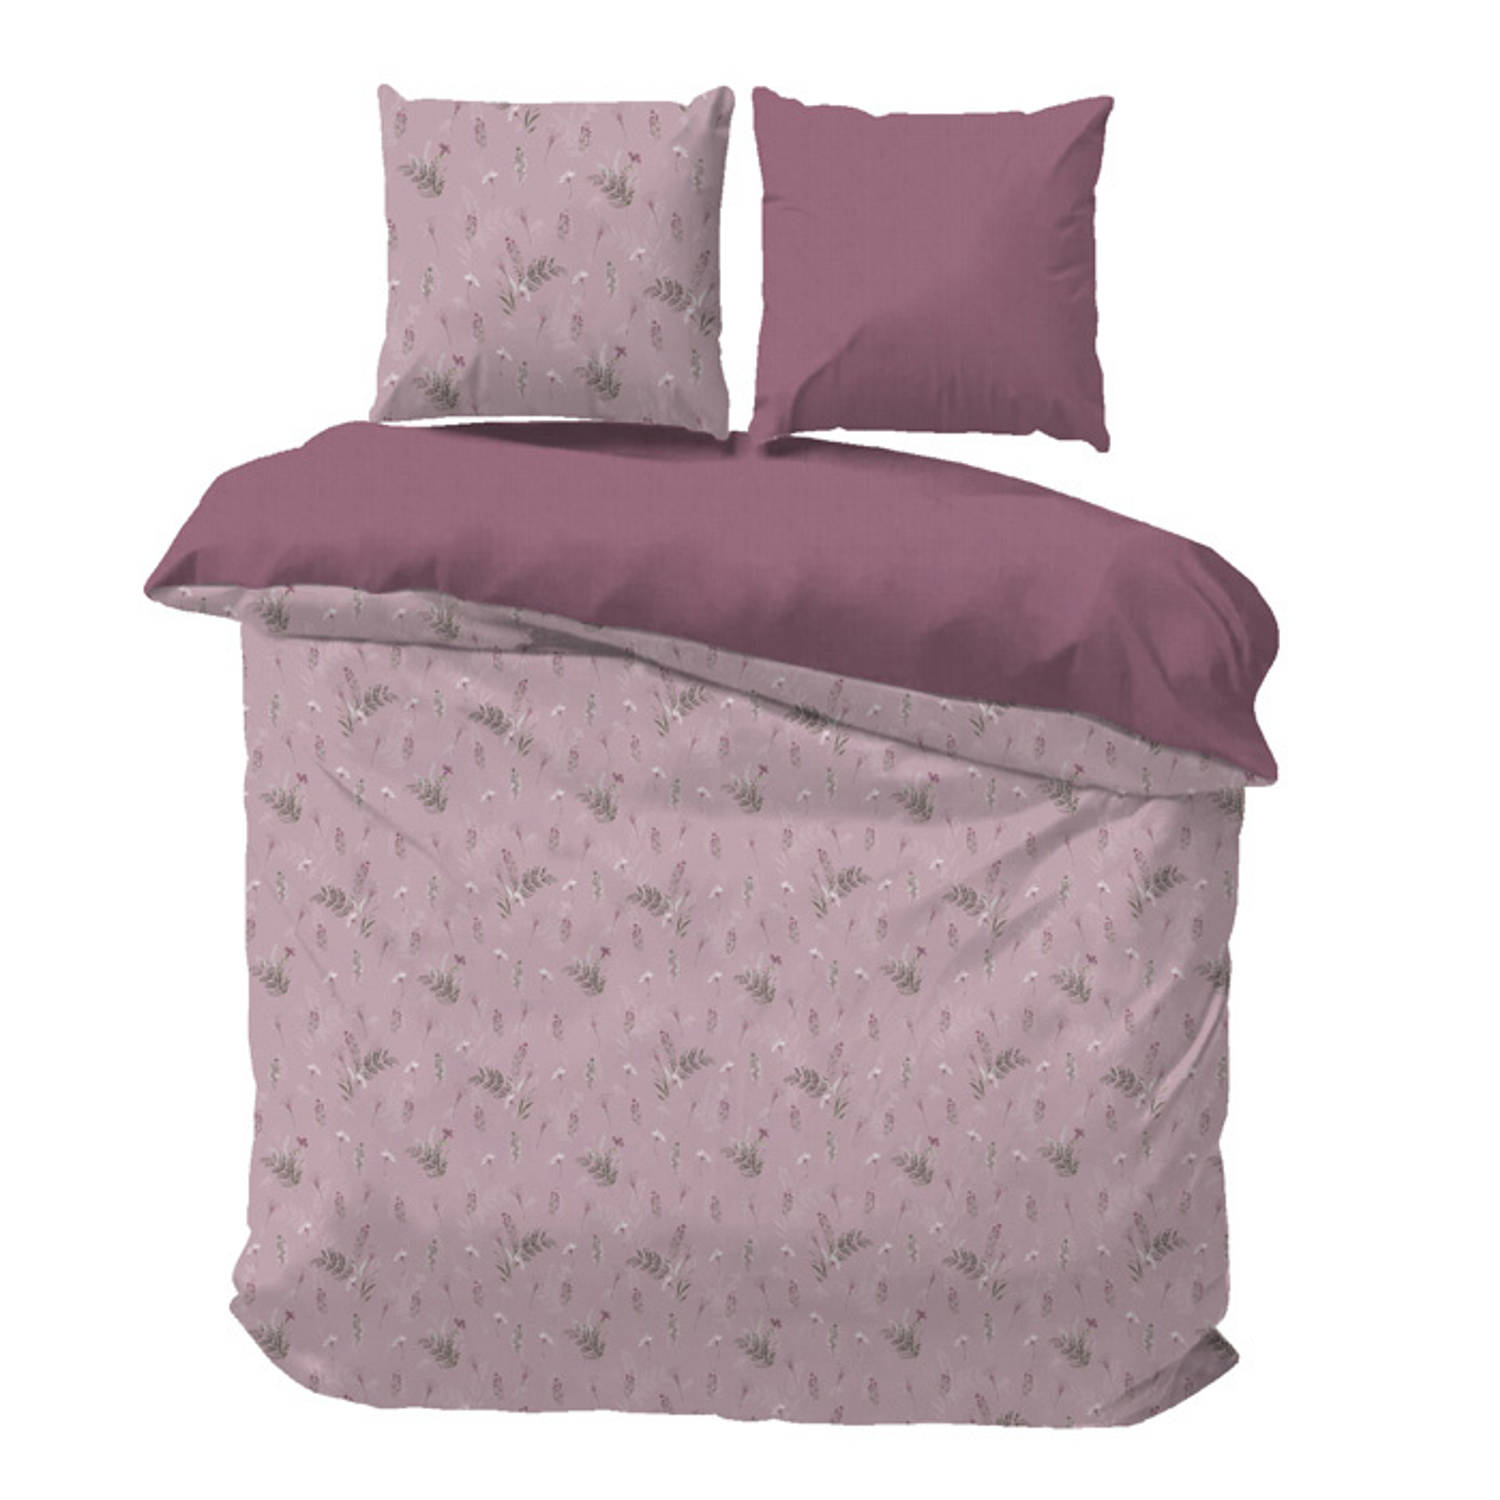 iSleep Dekbedovertrek Debby - Eenpersoons - 140x200/220 cm - Roze